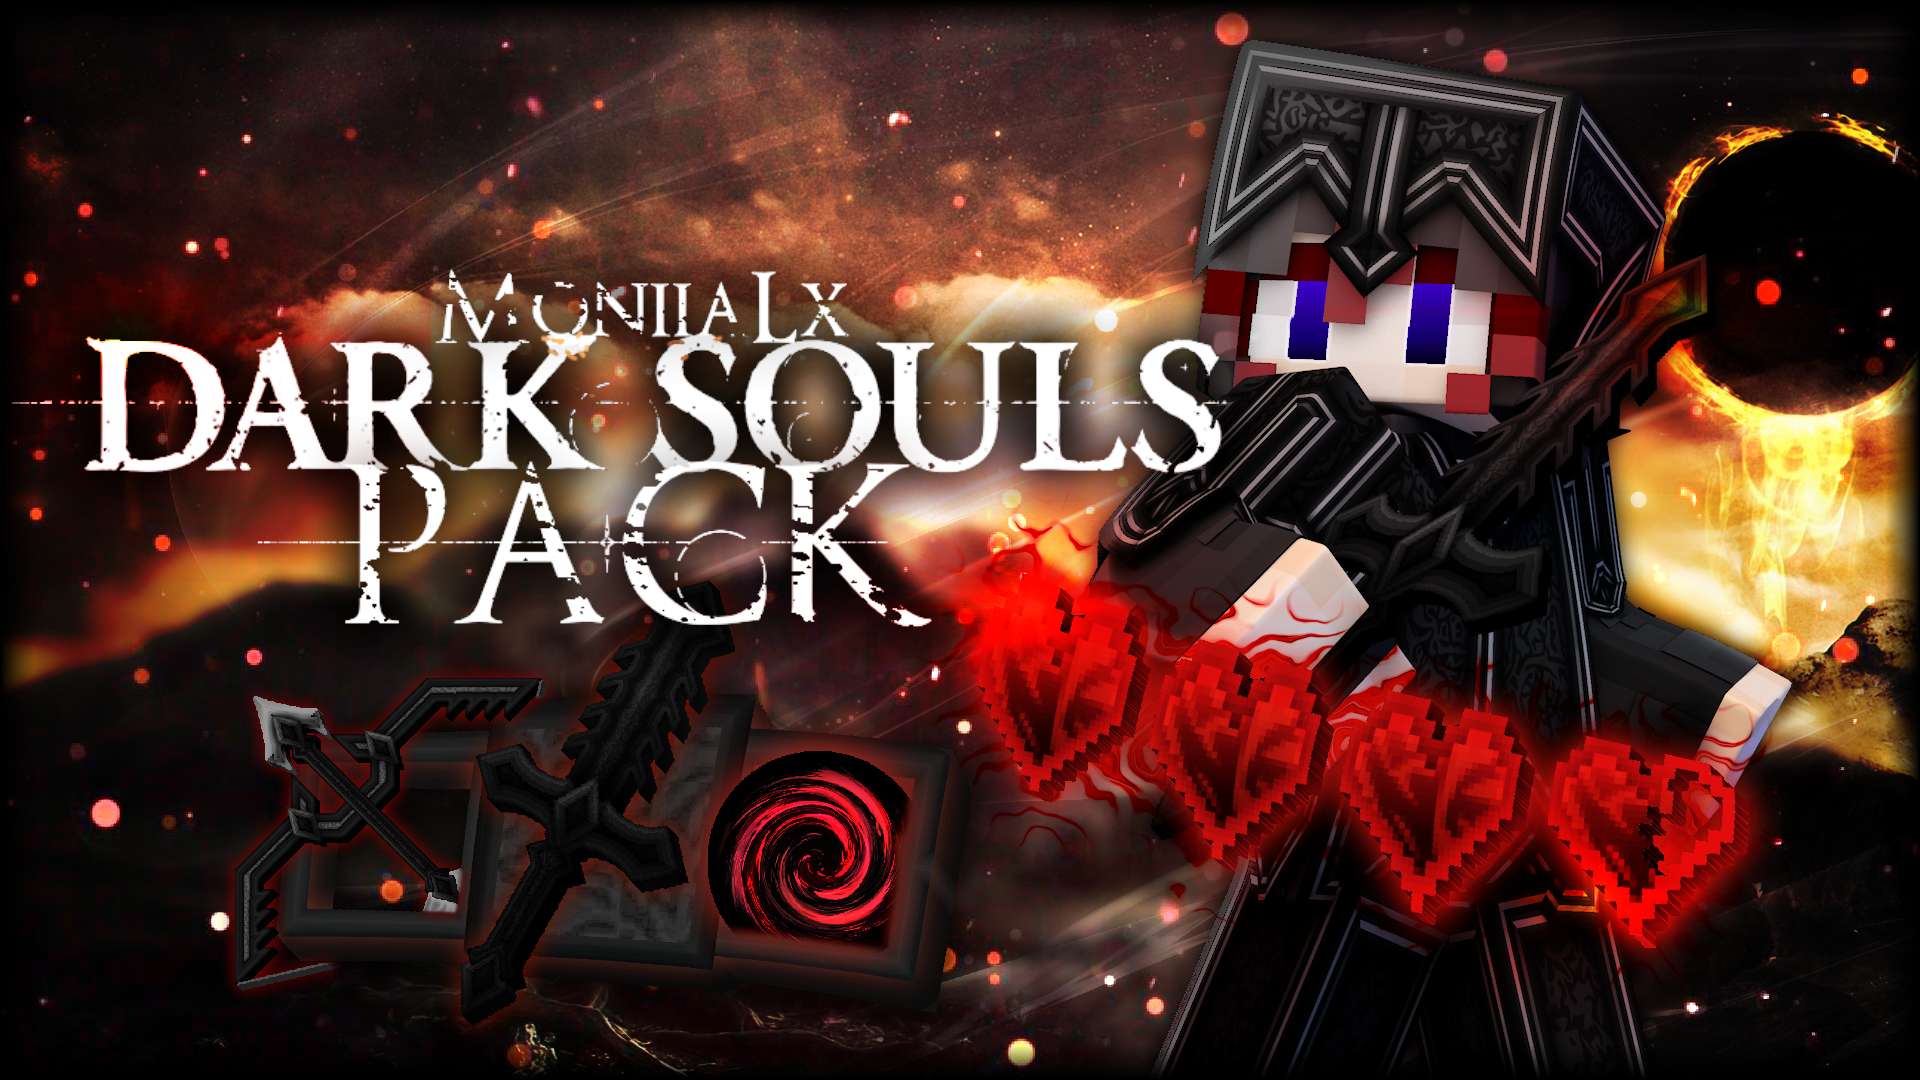 Dark Souls Pack 512x by Moniia on PvPRP